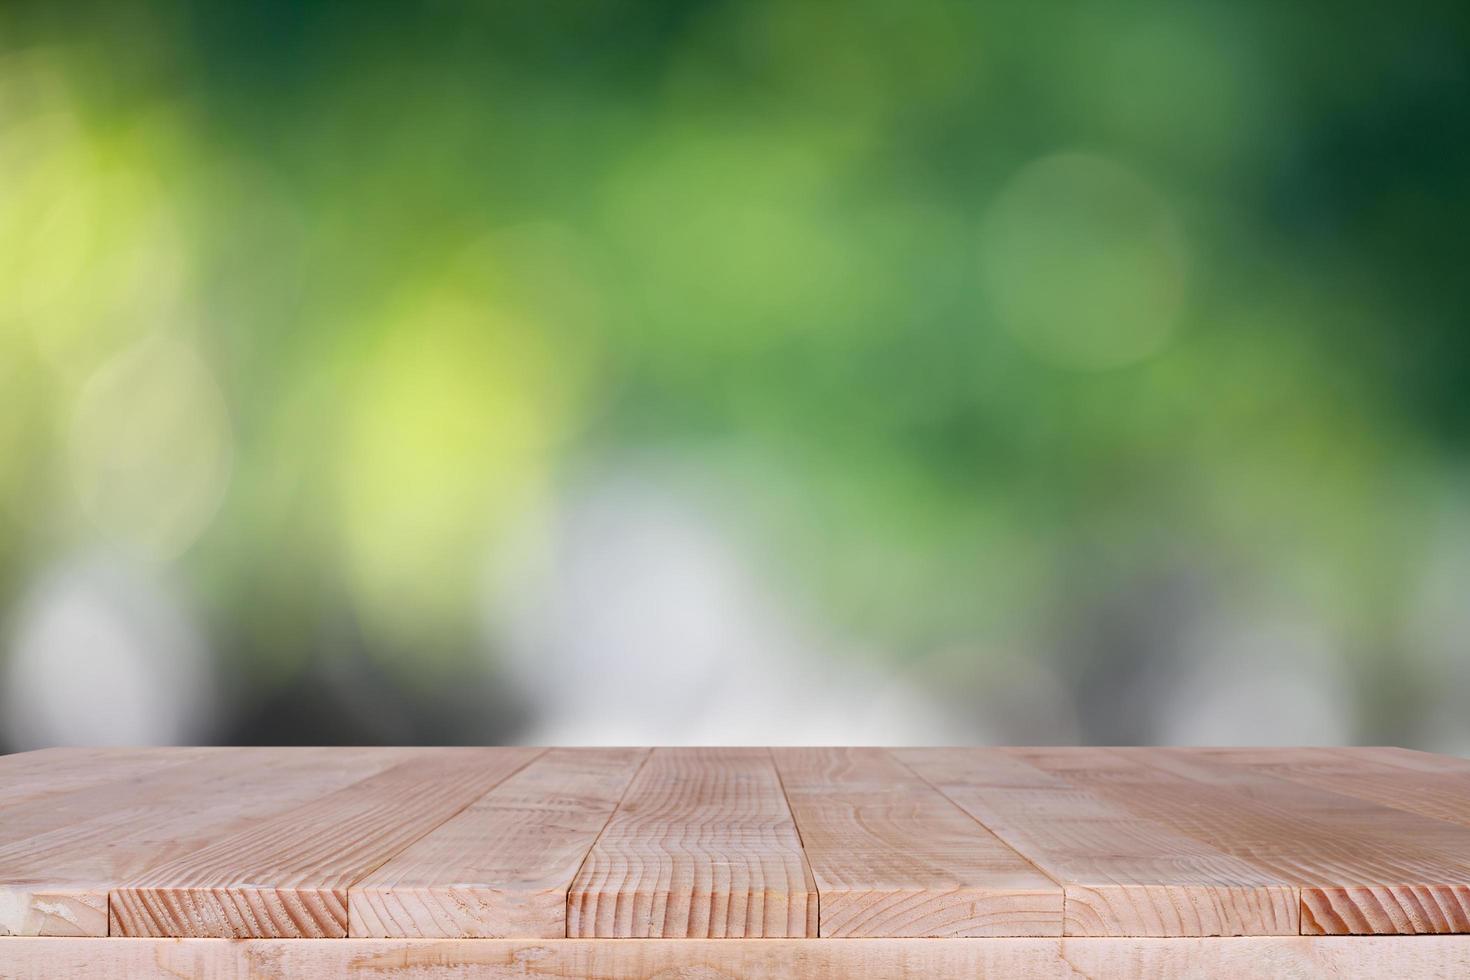 dessus de table en bois sur fond vert bokeh - peut être utilisé pour le montage ou l'affichage de vos produits photo